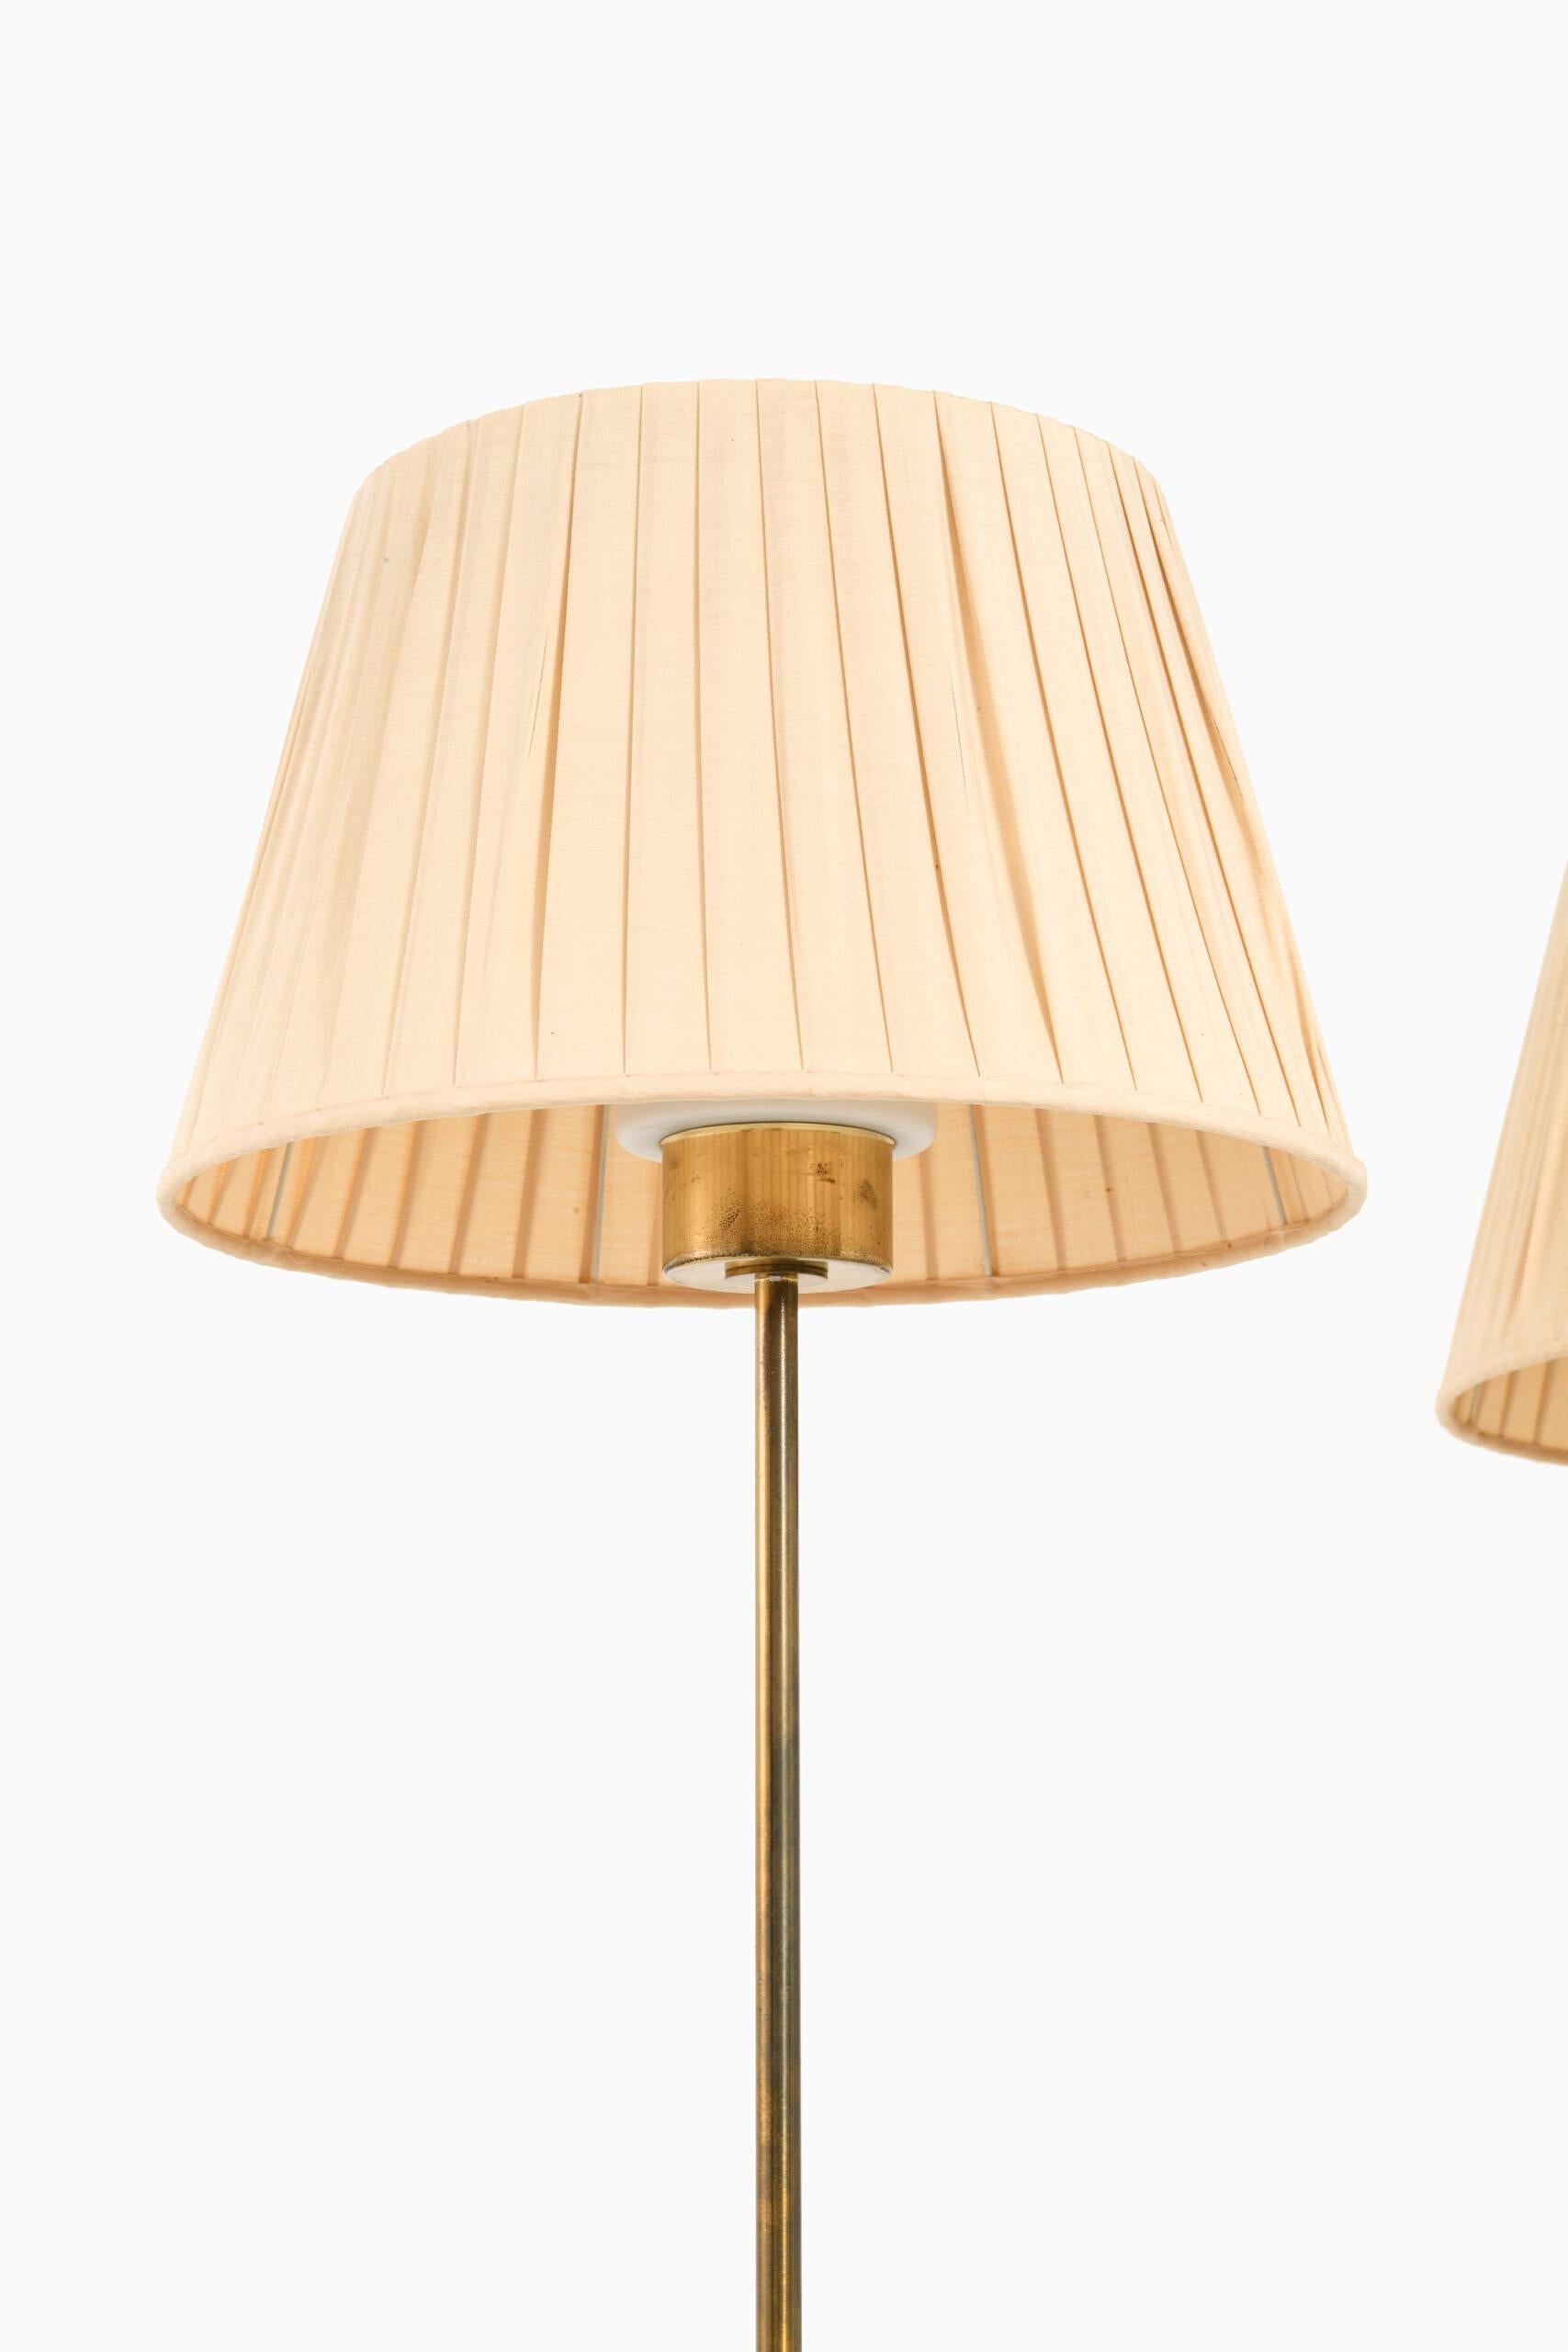 Rare paire de lampadaires modèle G-50 conçue par Hans-Agne Jakobsson. Produit par Hans-Agne Jakobsson AB à Markaryd, Suède.